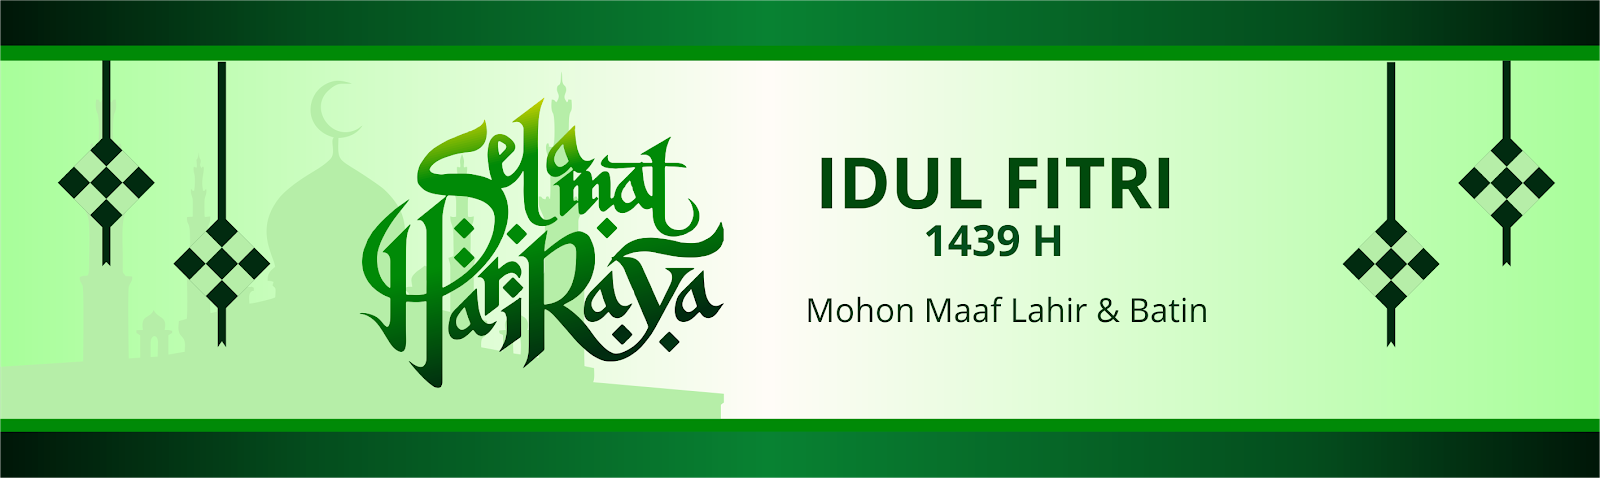 Download Desain Banner Lebaran Idul Fitri Tahun 2018 